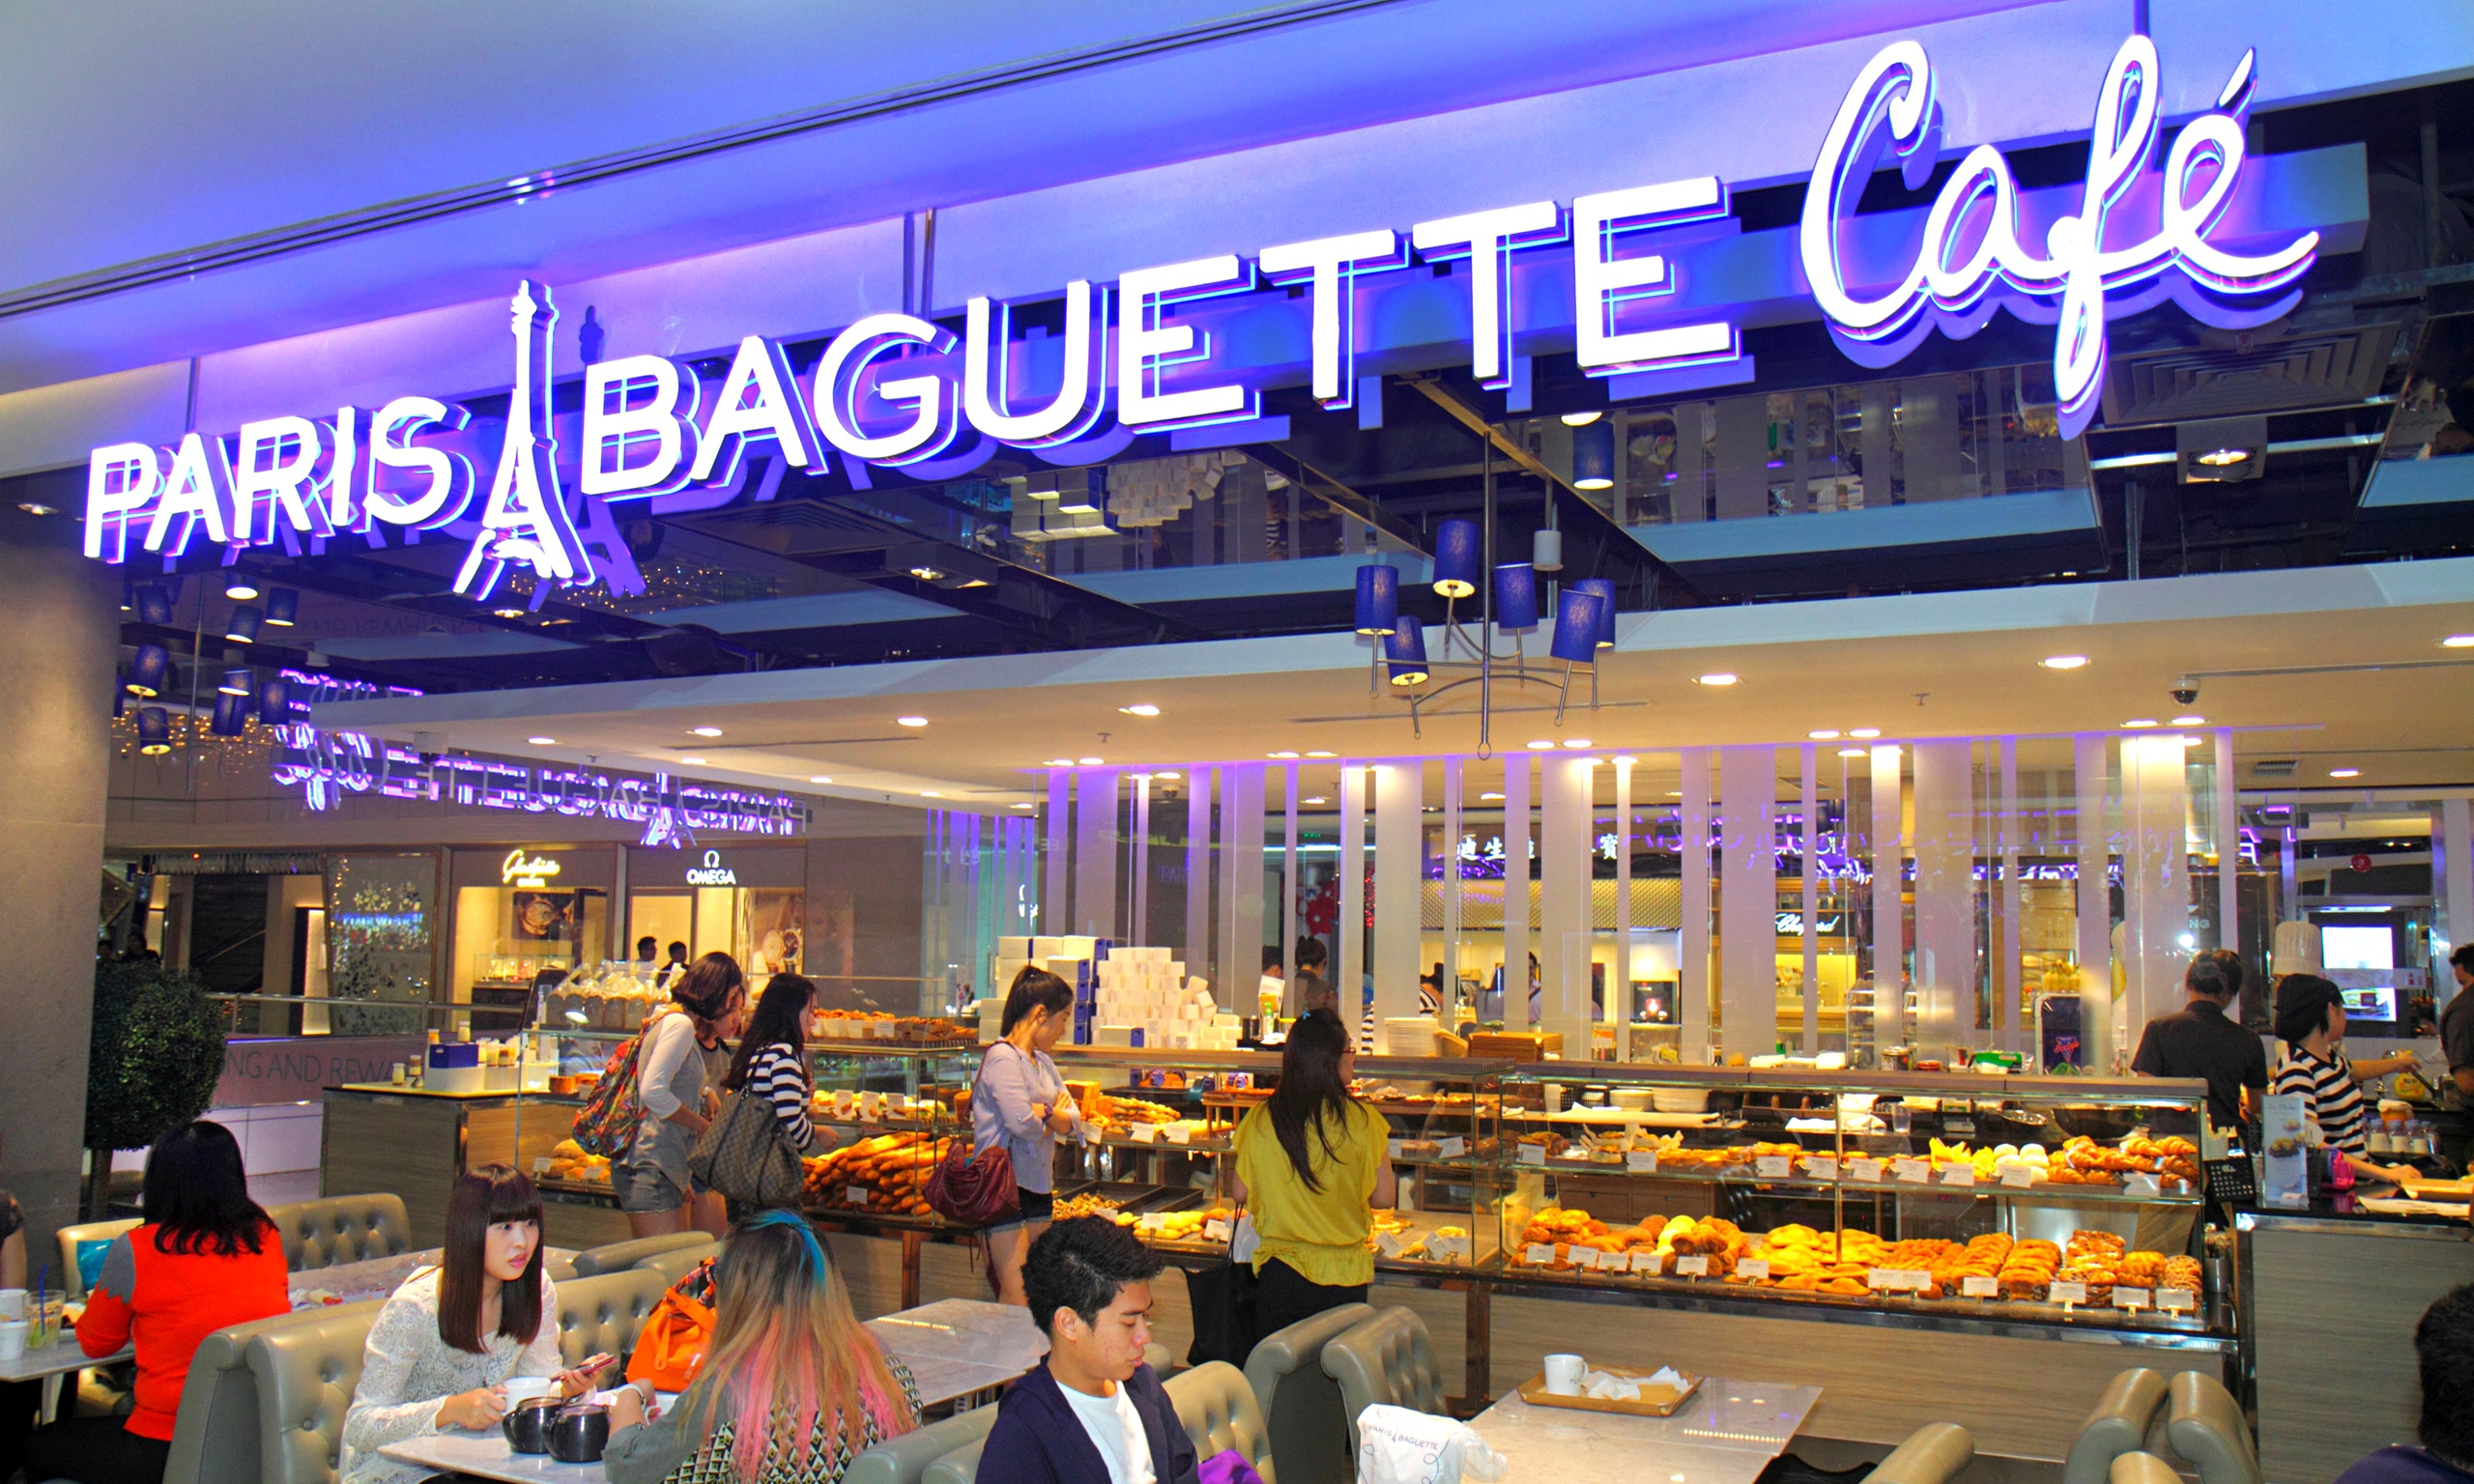 Korea's Paris Baguette chain expands to ... Paris | World ...